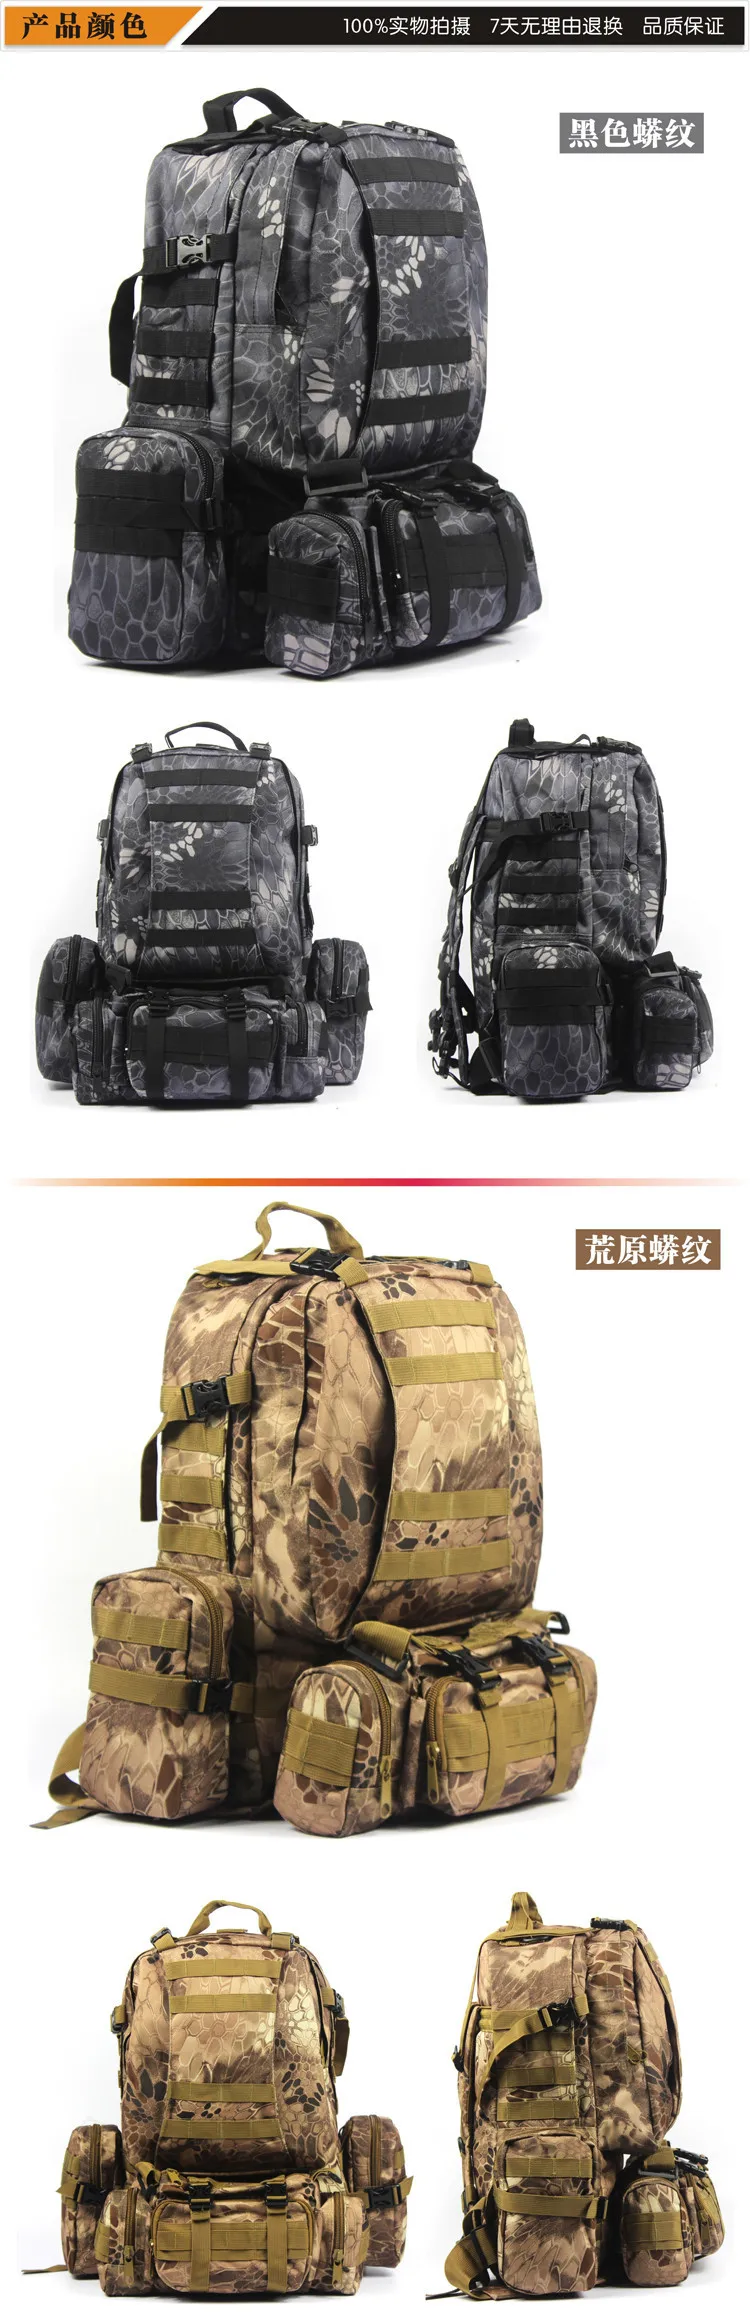 Тактический спортивный рюкзак сумка камуфляж мешок большой емкости рюкзак альпинизм мешок